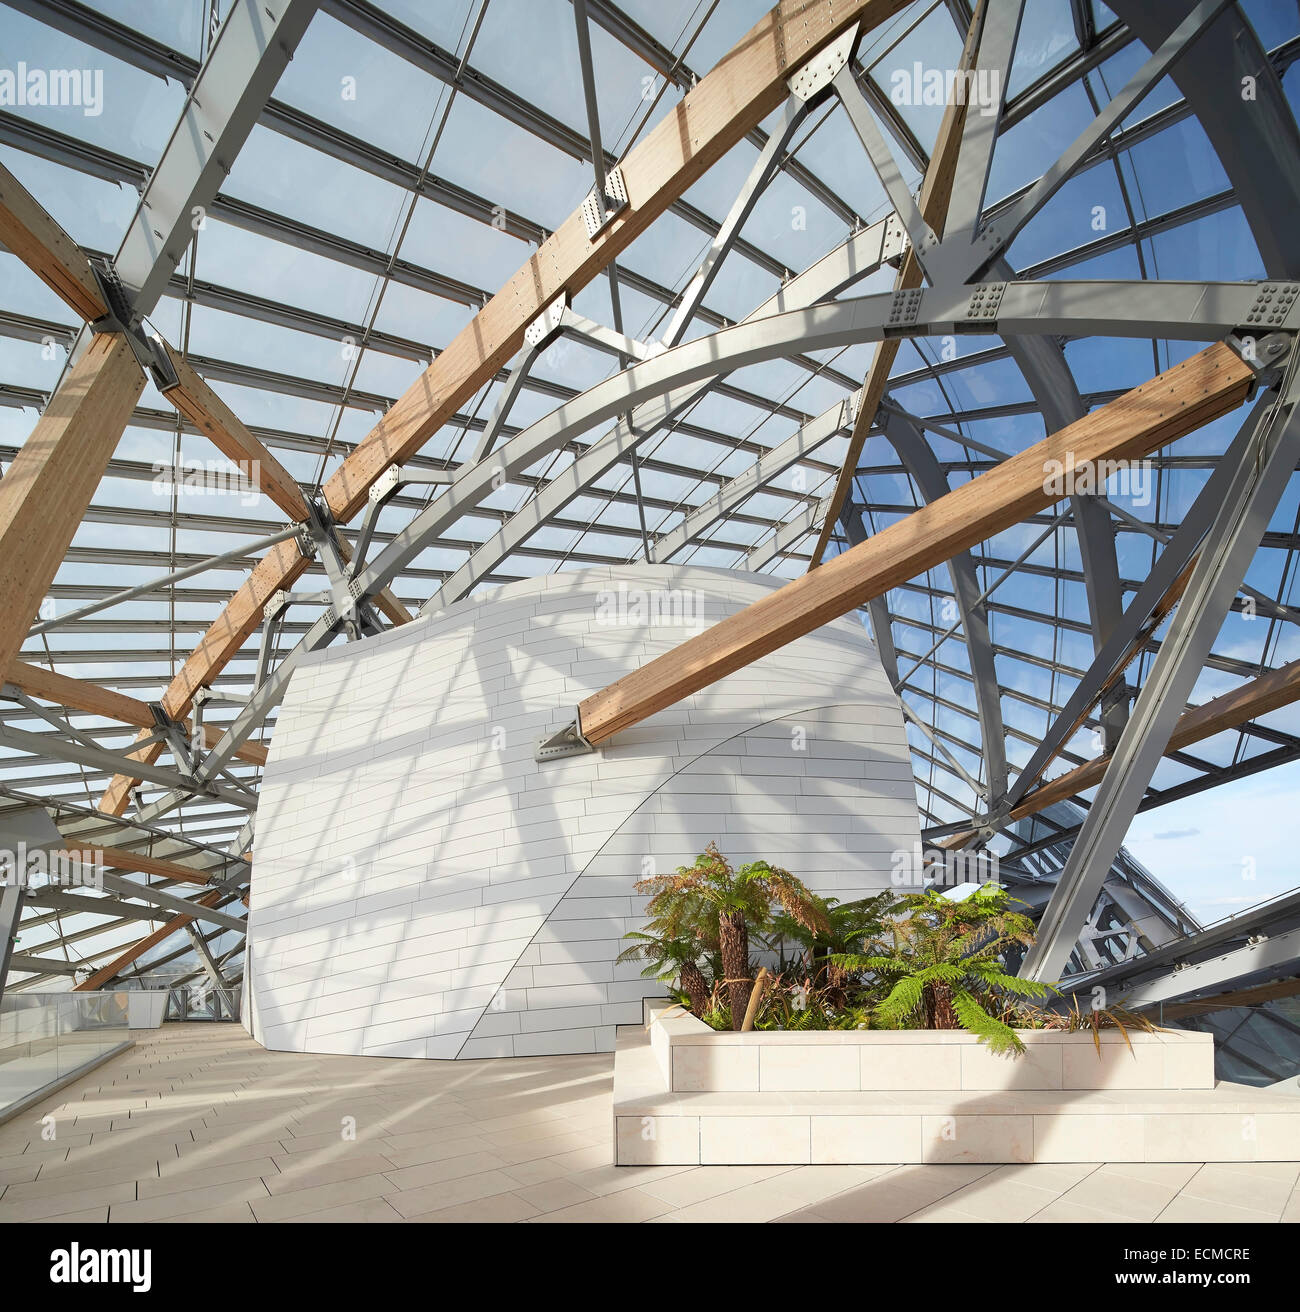 Fondation Louis Vuitton, Paris, France. Architect: Gehry Partners Stock Photo: 76666450 - Alamy